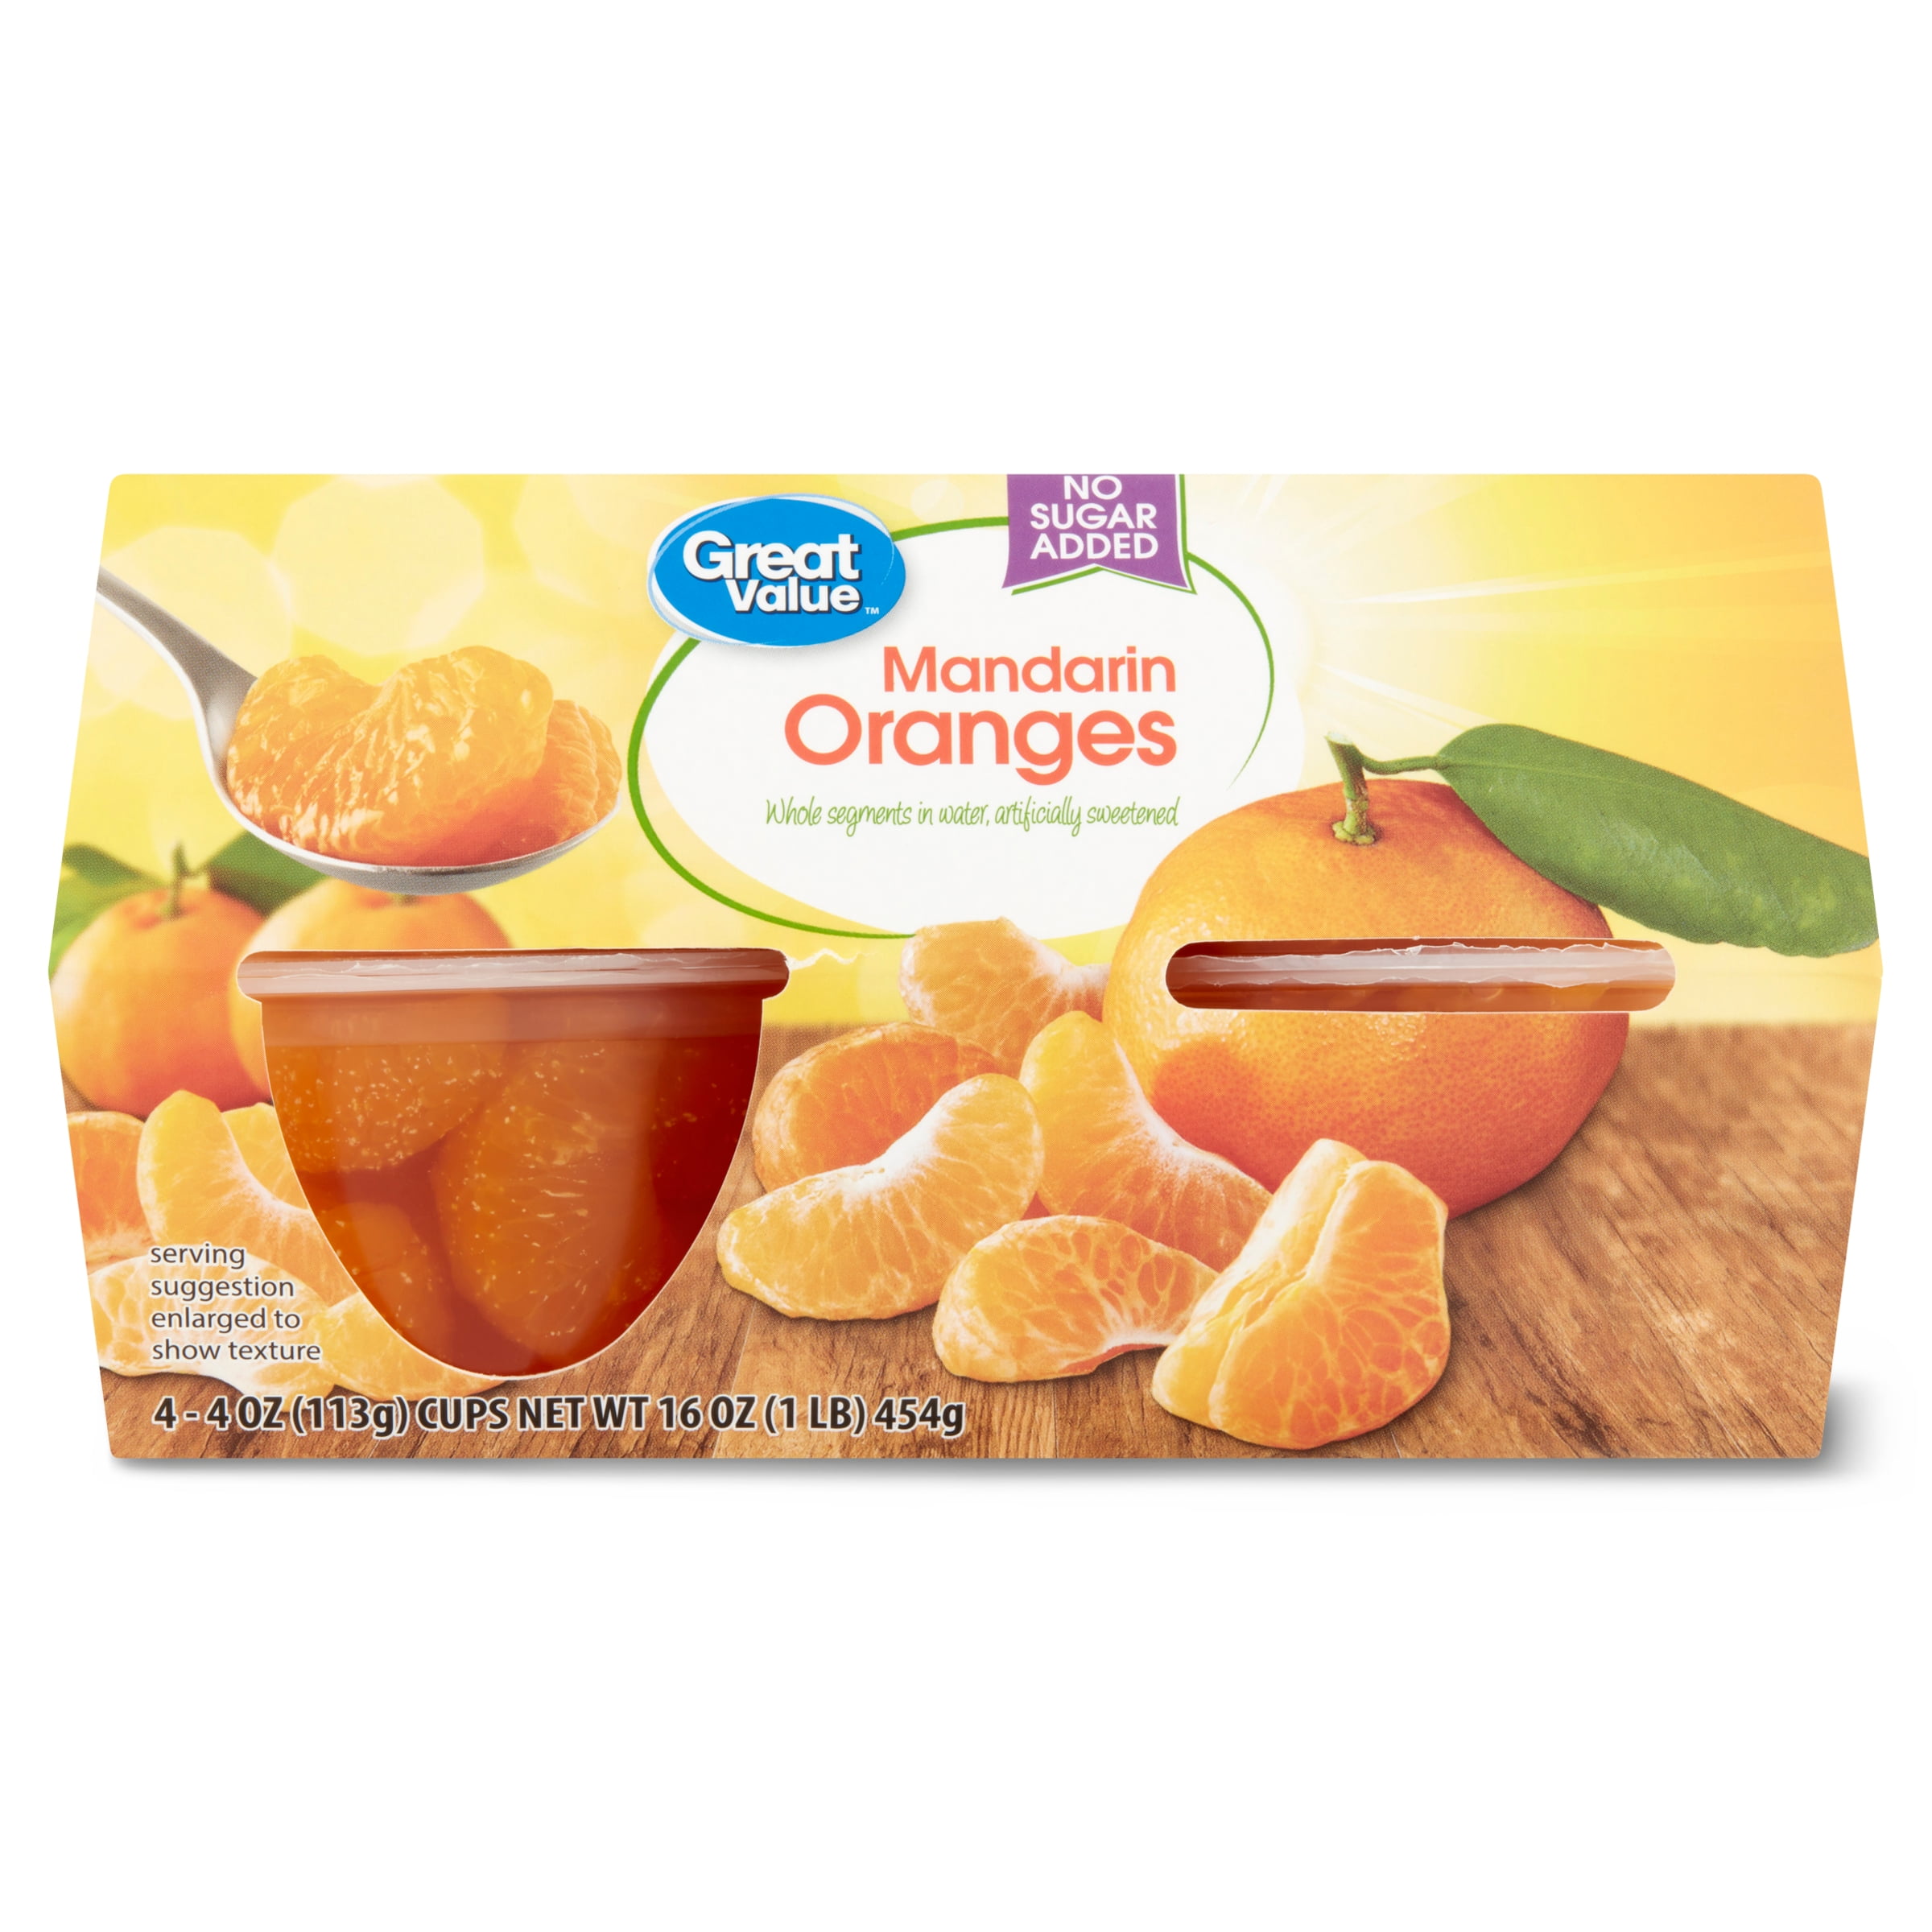 Great Value Mandarin Oranges NSA, 3.8 oz, 4 Ct